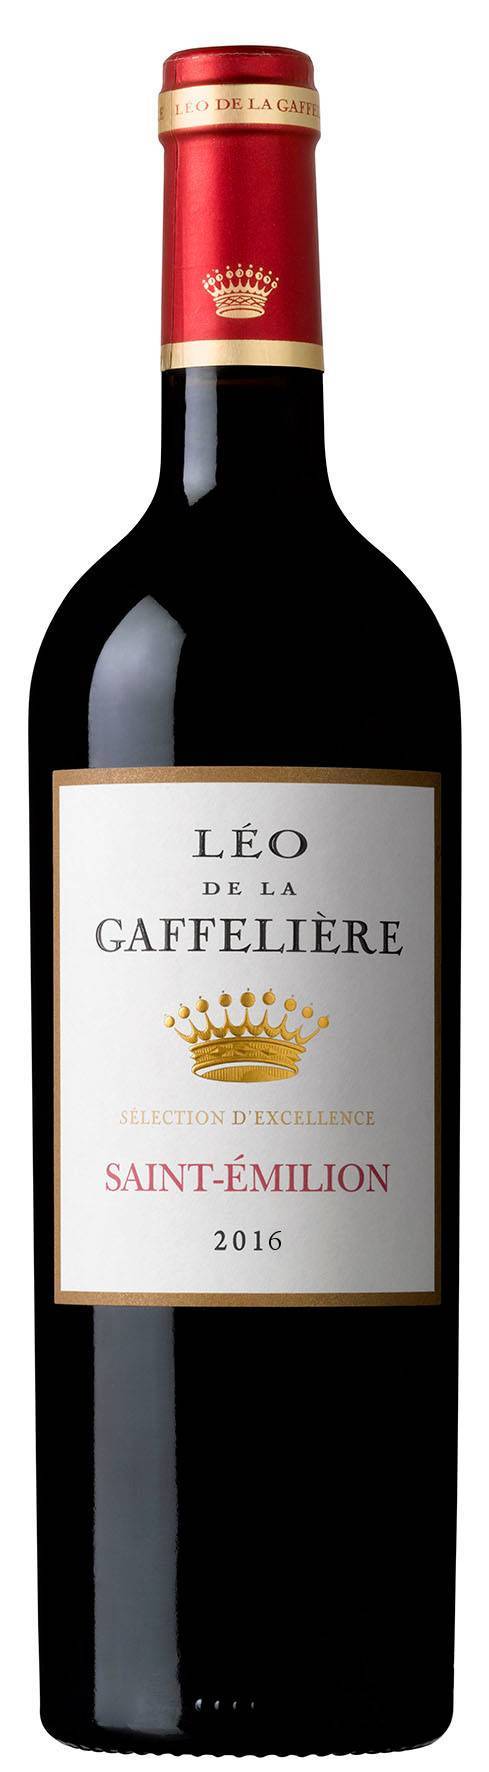 Léo de La Gaffelière - Vin rouge saint-émilion Bordeaux 2016 (750 ml)